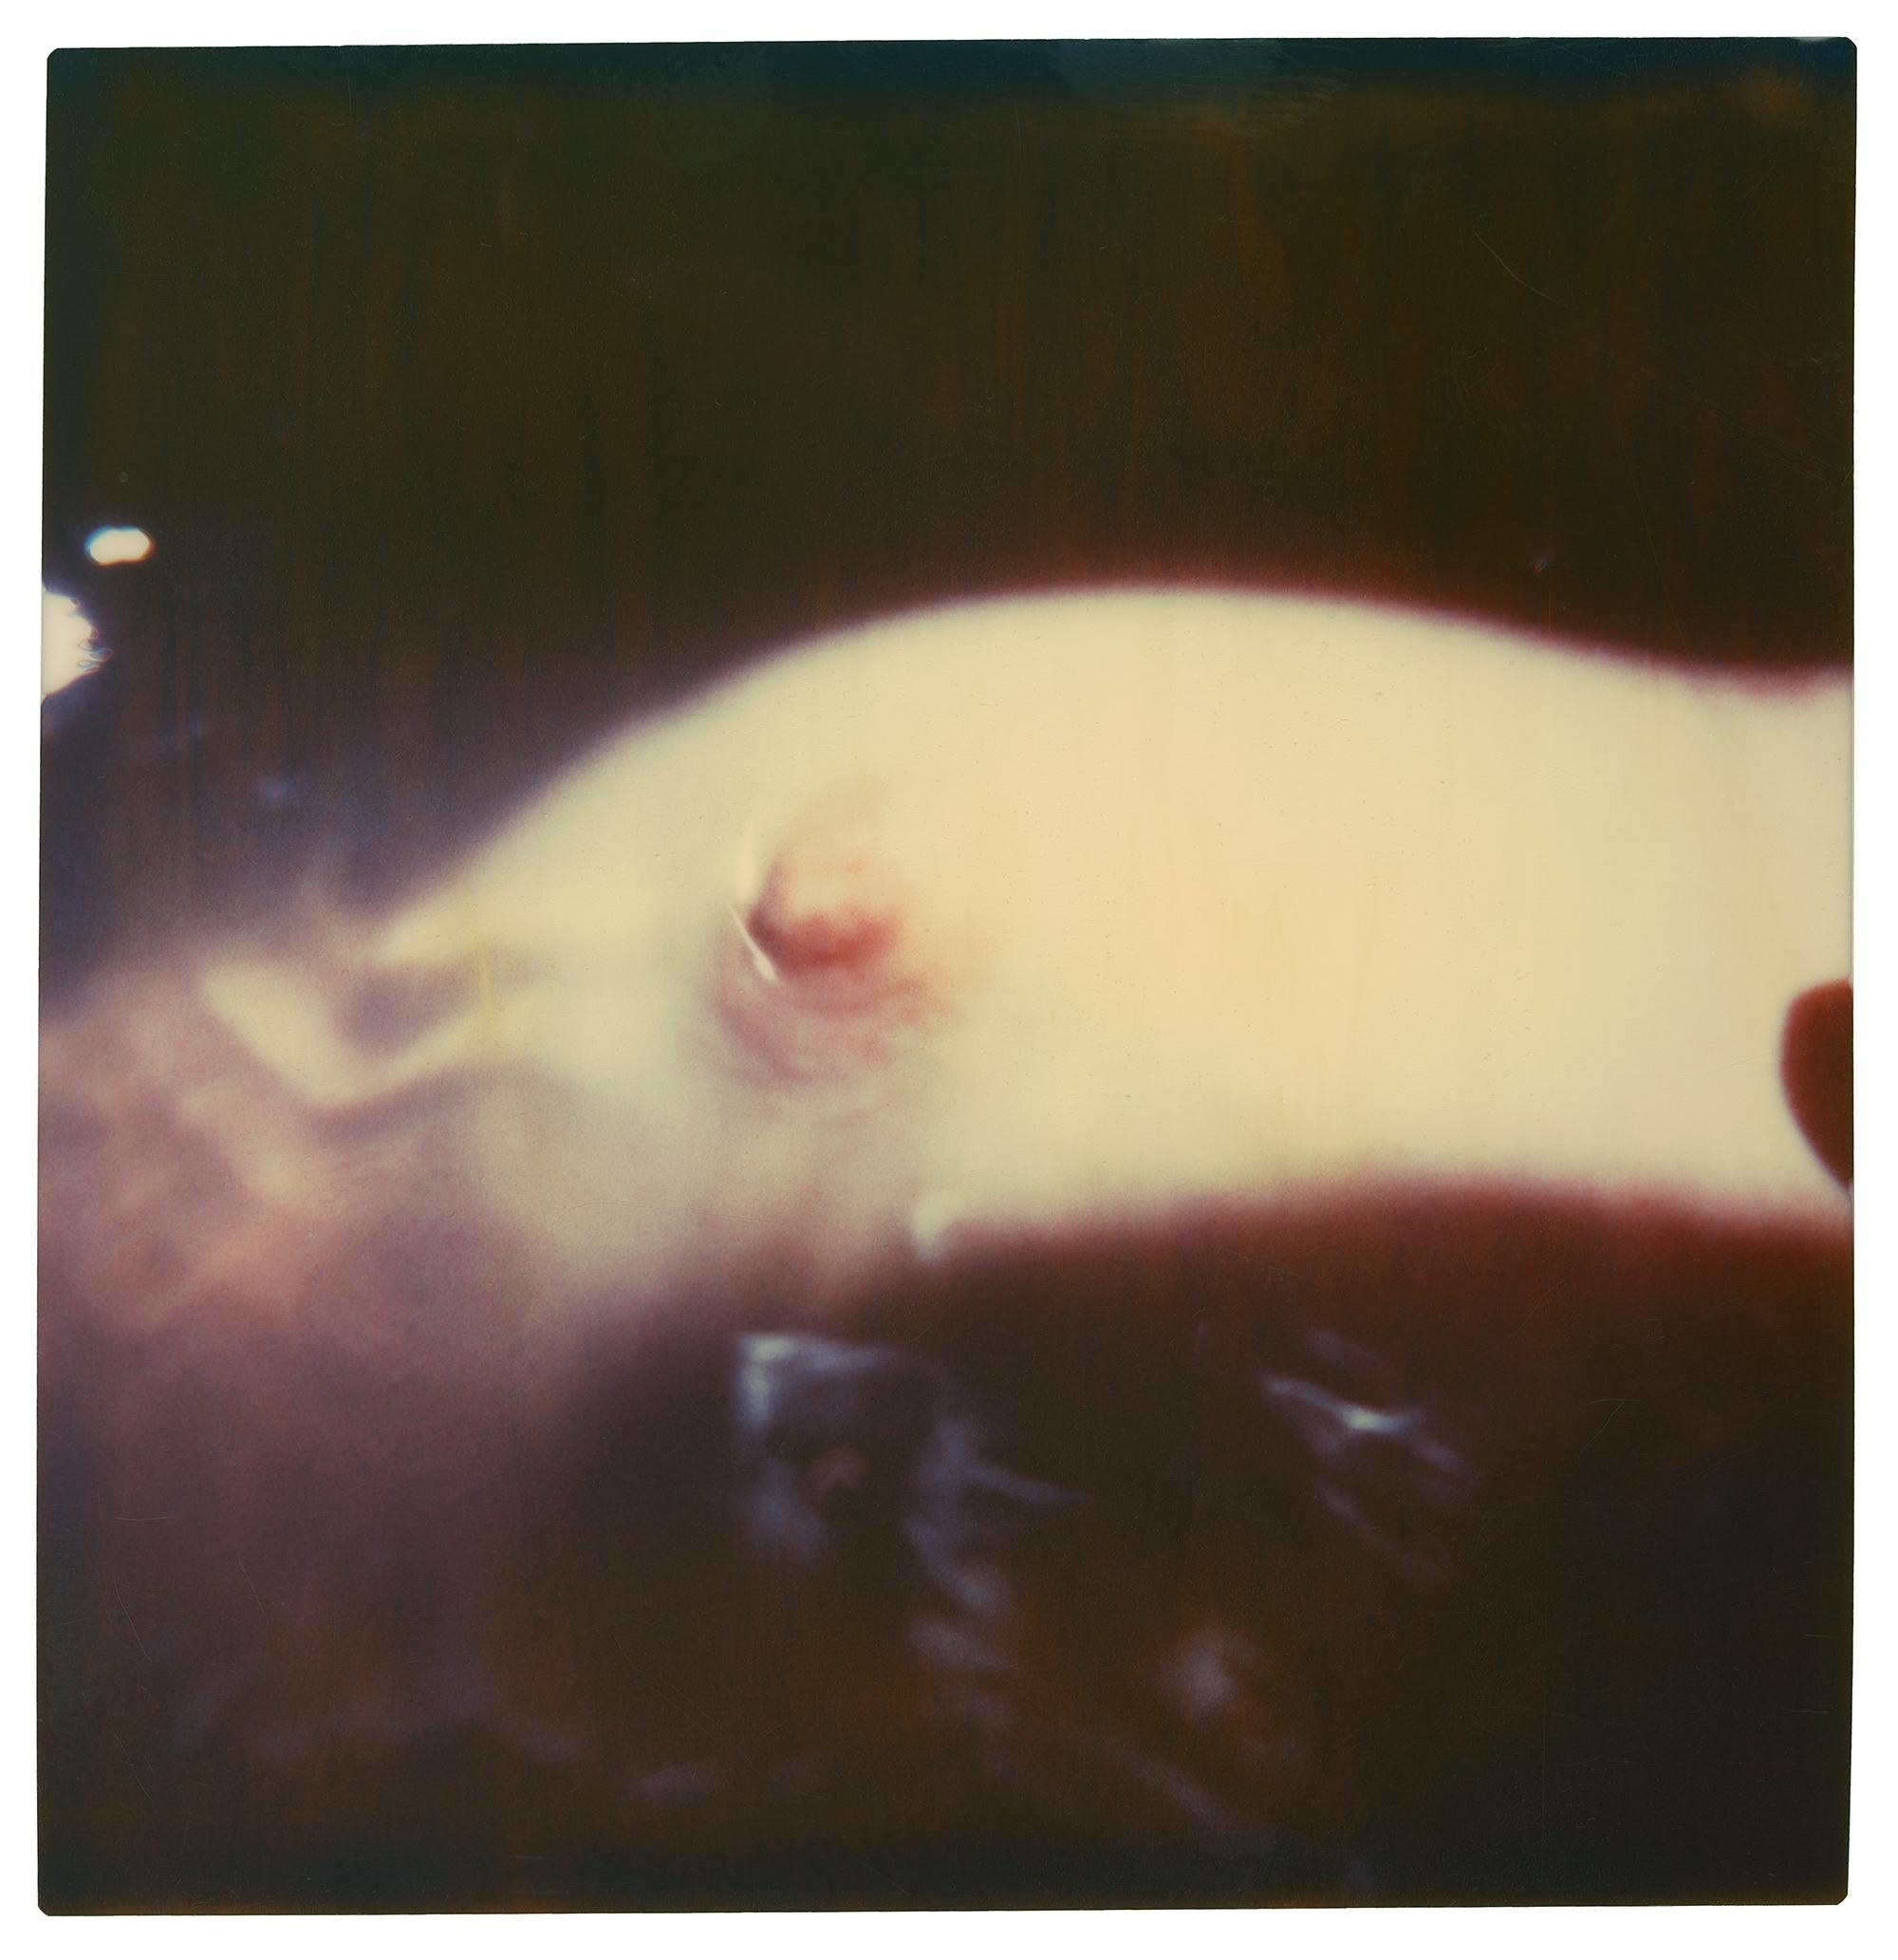 Nipple - Bathtime III (29 Palms, CA) based on a Polaroid